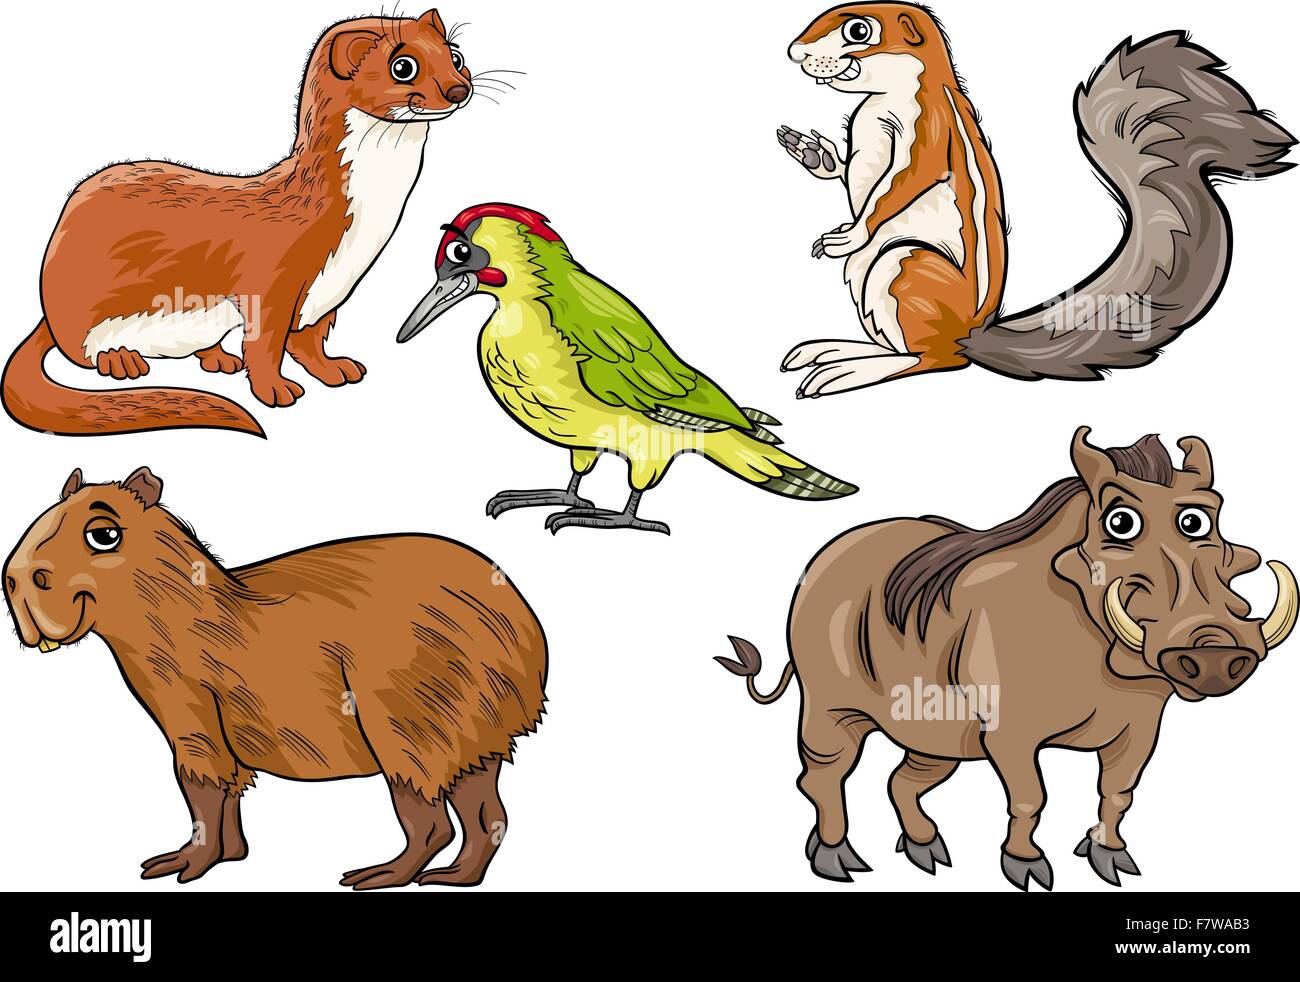 wild animals set cartoon illustration Stock Vector